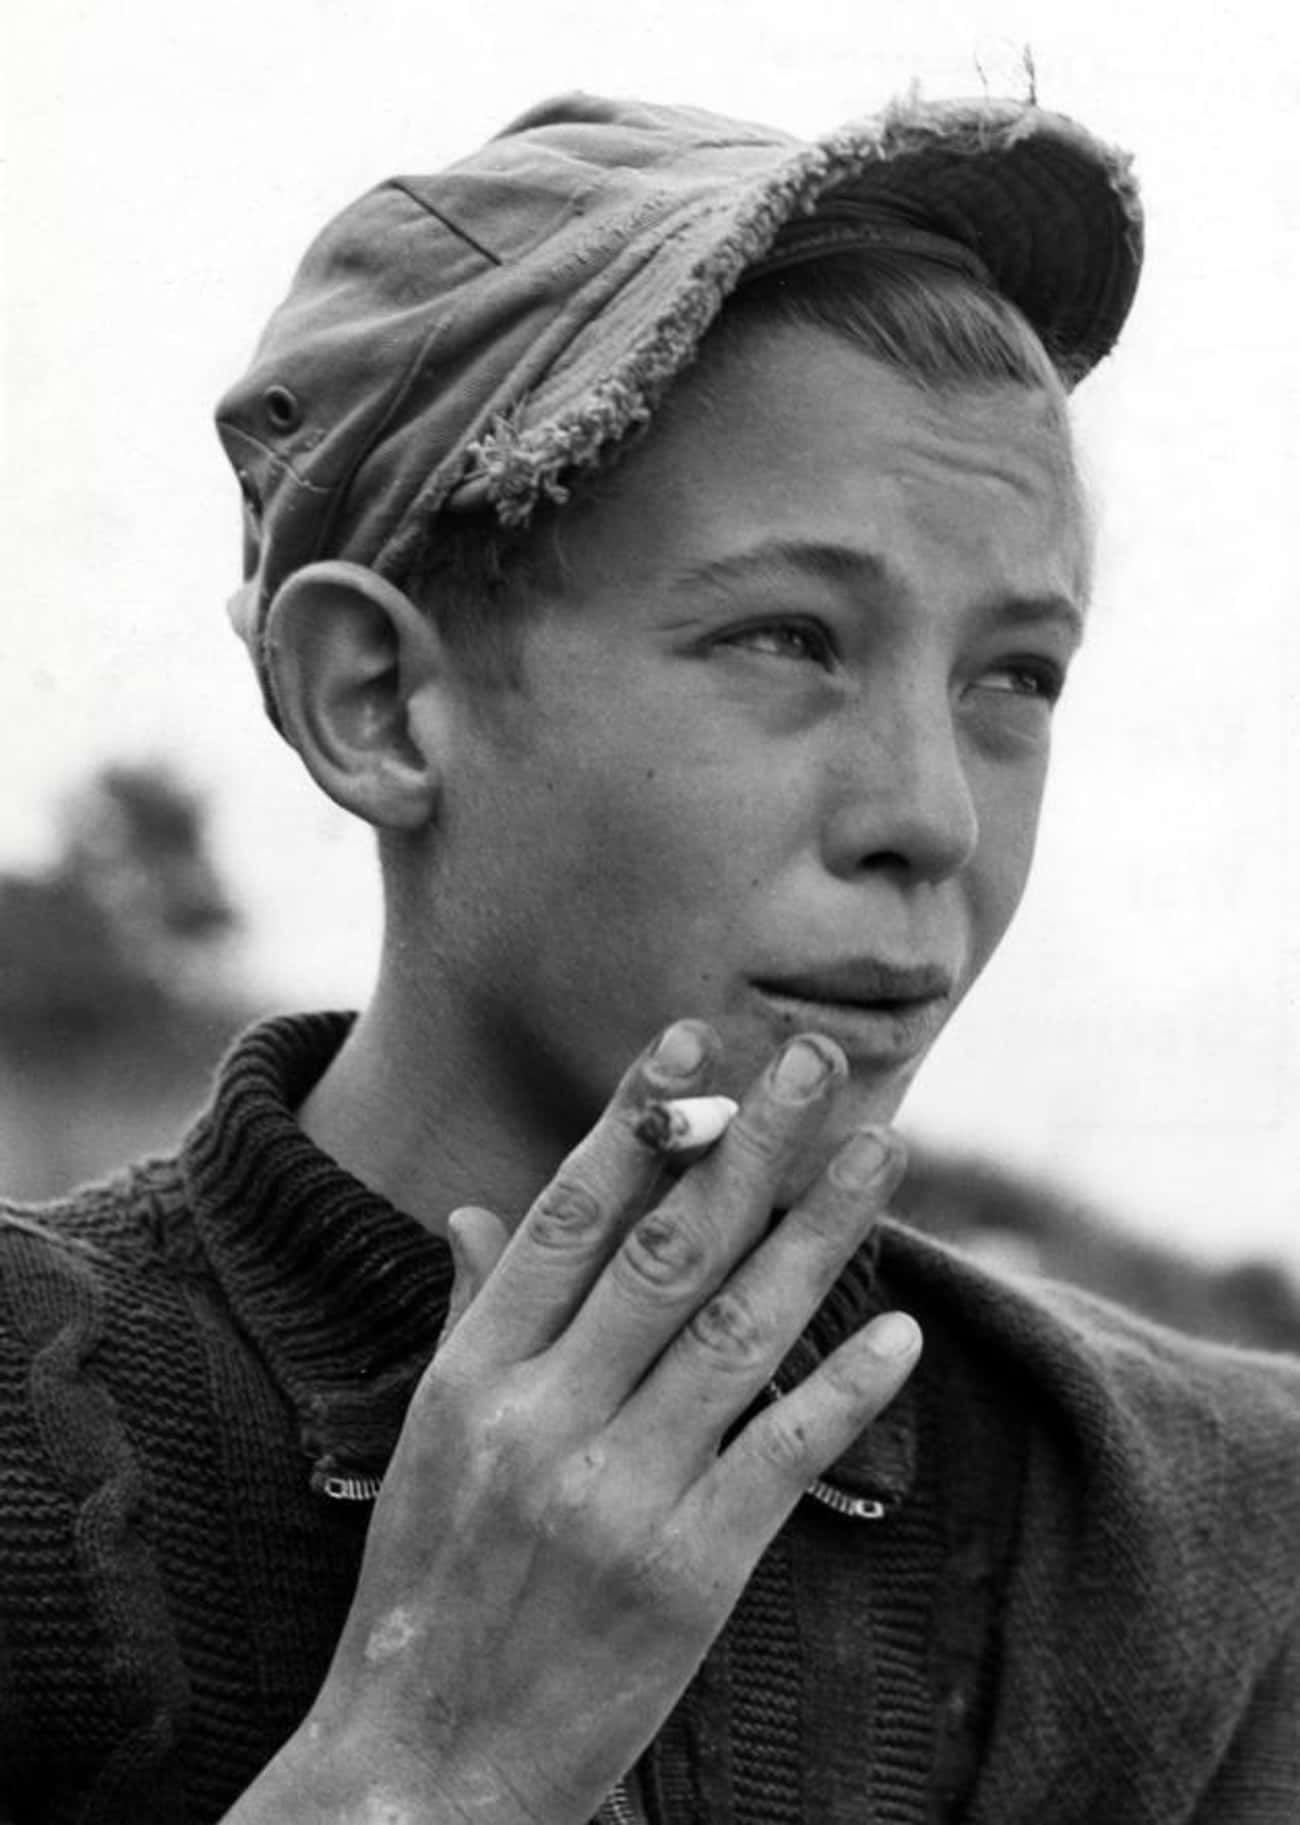 Мальчик в кепке с сигаретой